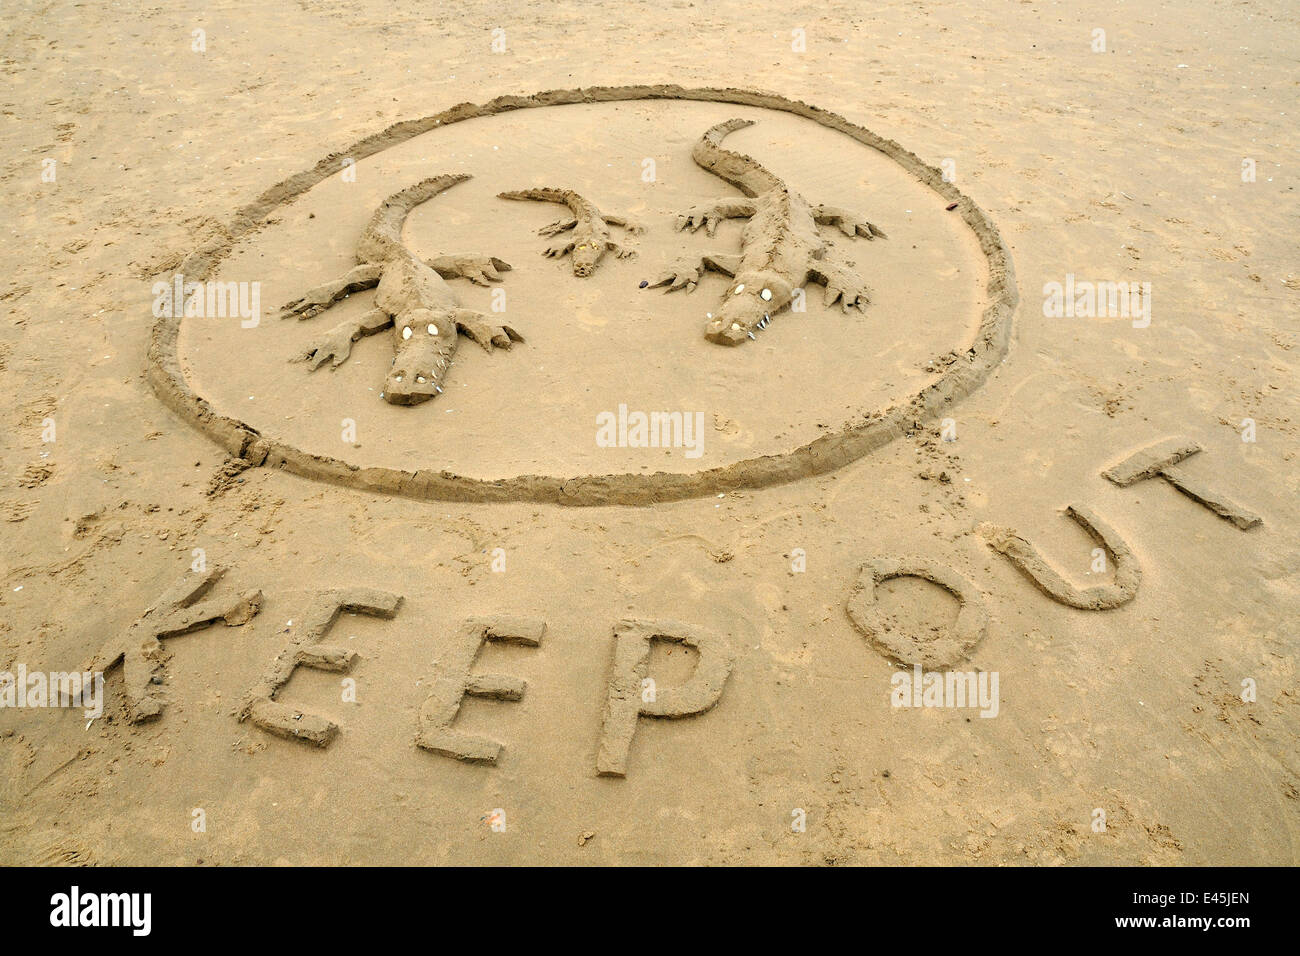 Piscine Crocodile sculpture de sable sur une plage de sable à marée basse, la plage de Rhossili, la péninsule de Gower, au Pays de Galles Banque D'Images